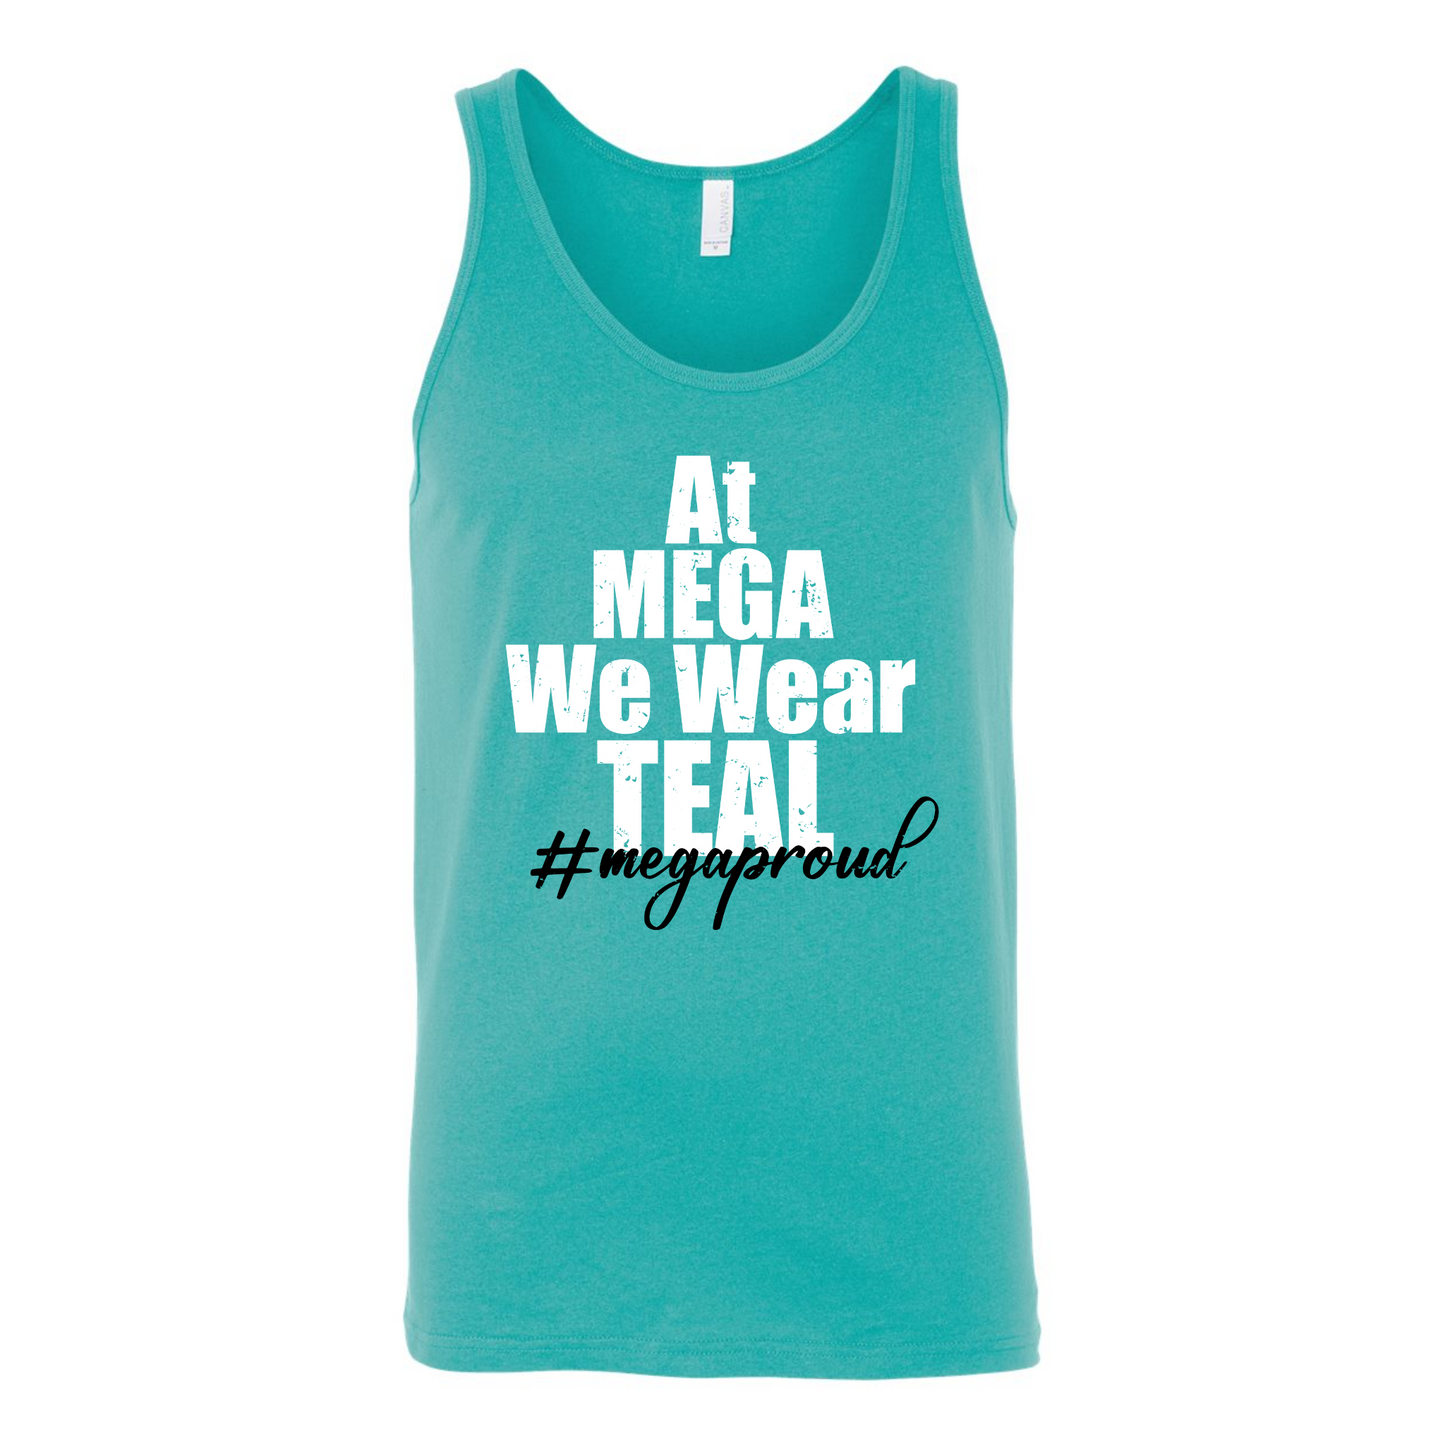 At MEGA We Wear Teal - #megaproud Teal Tank